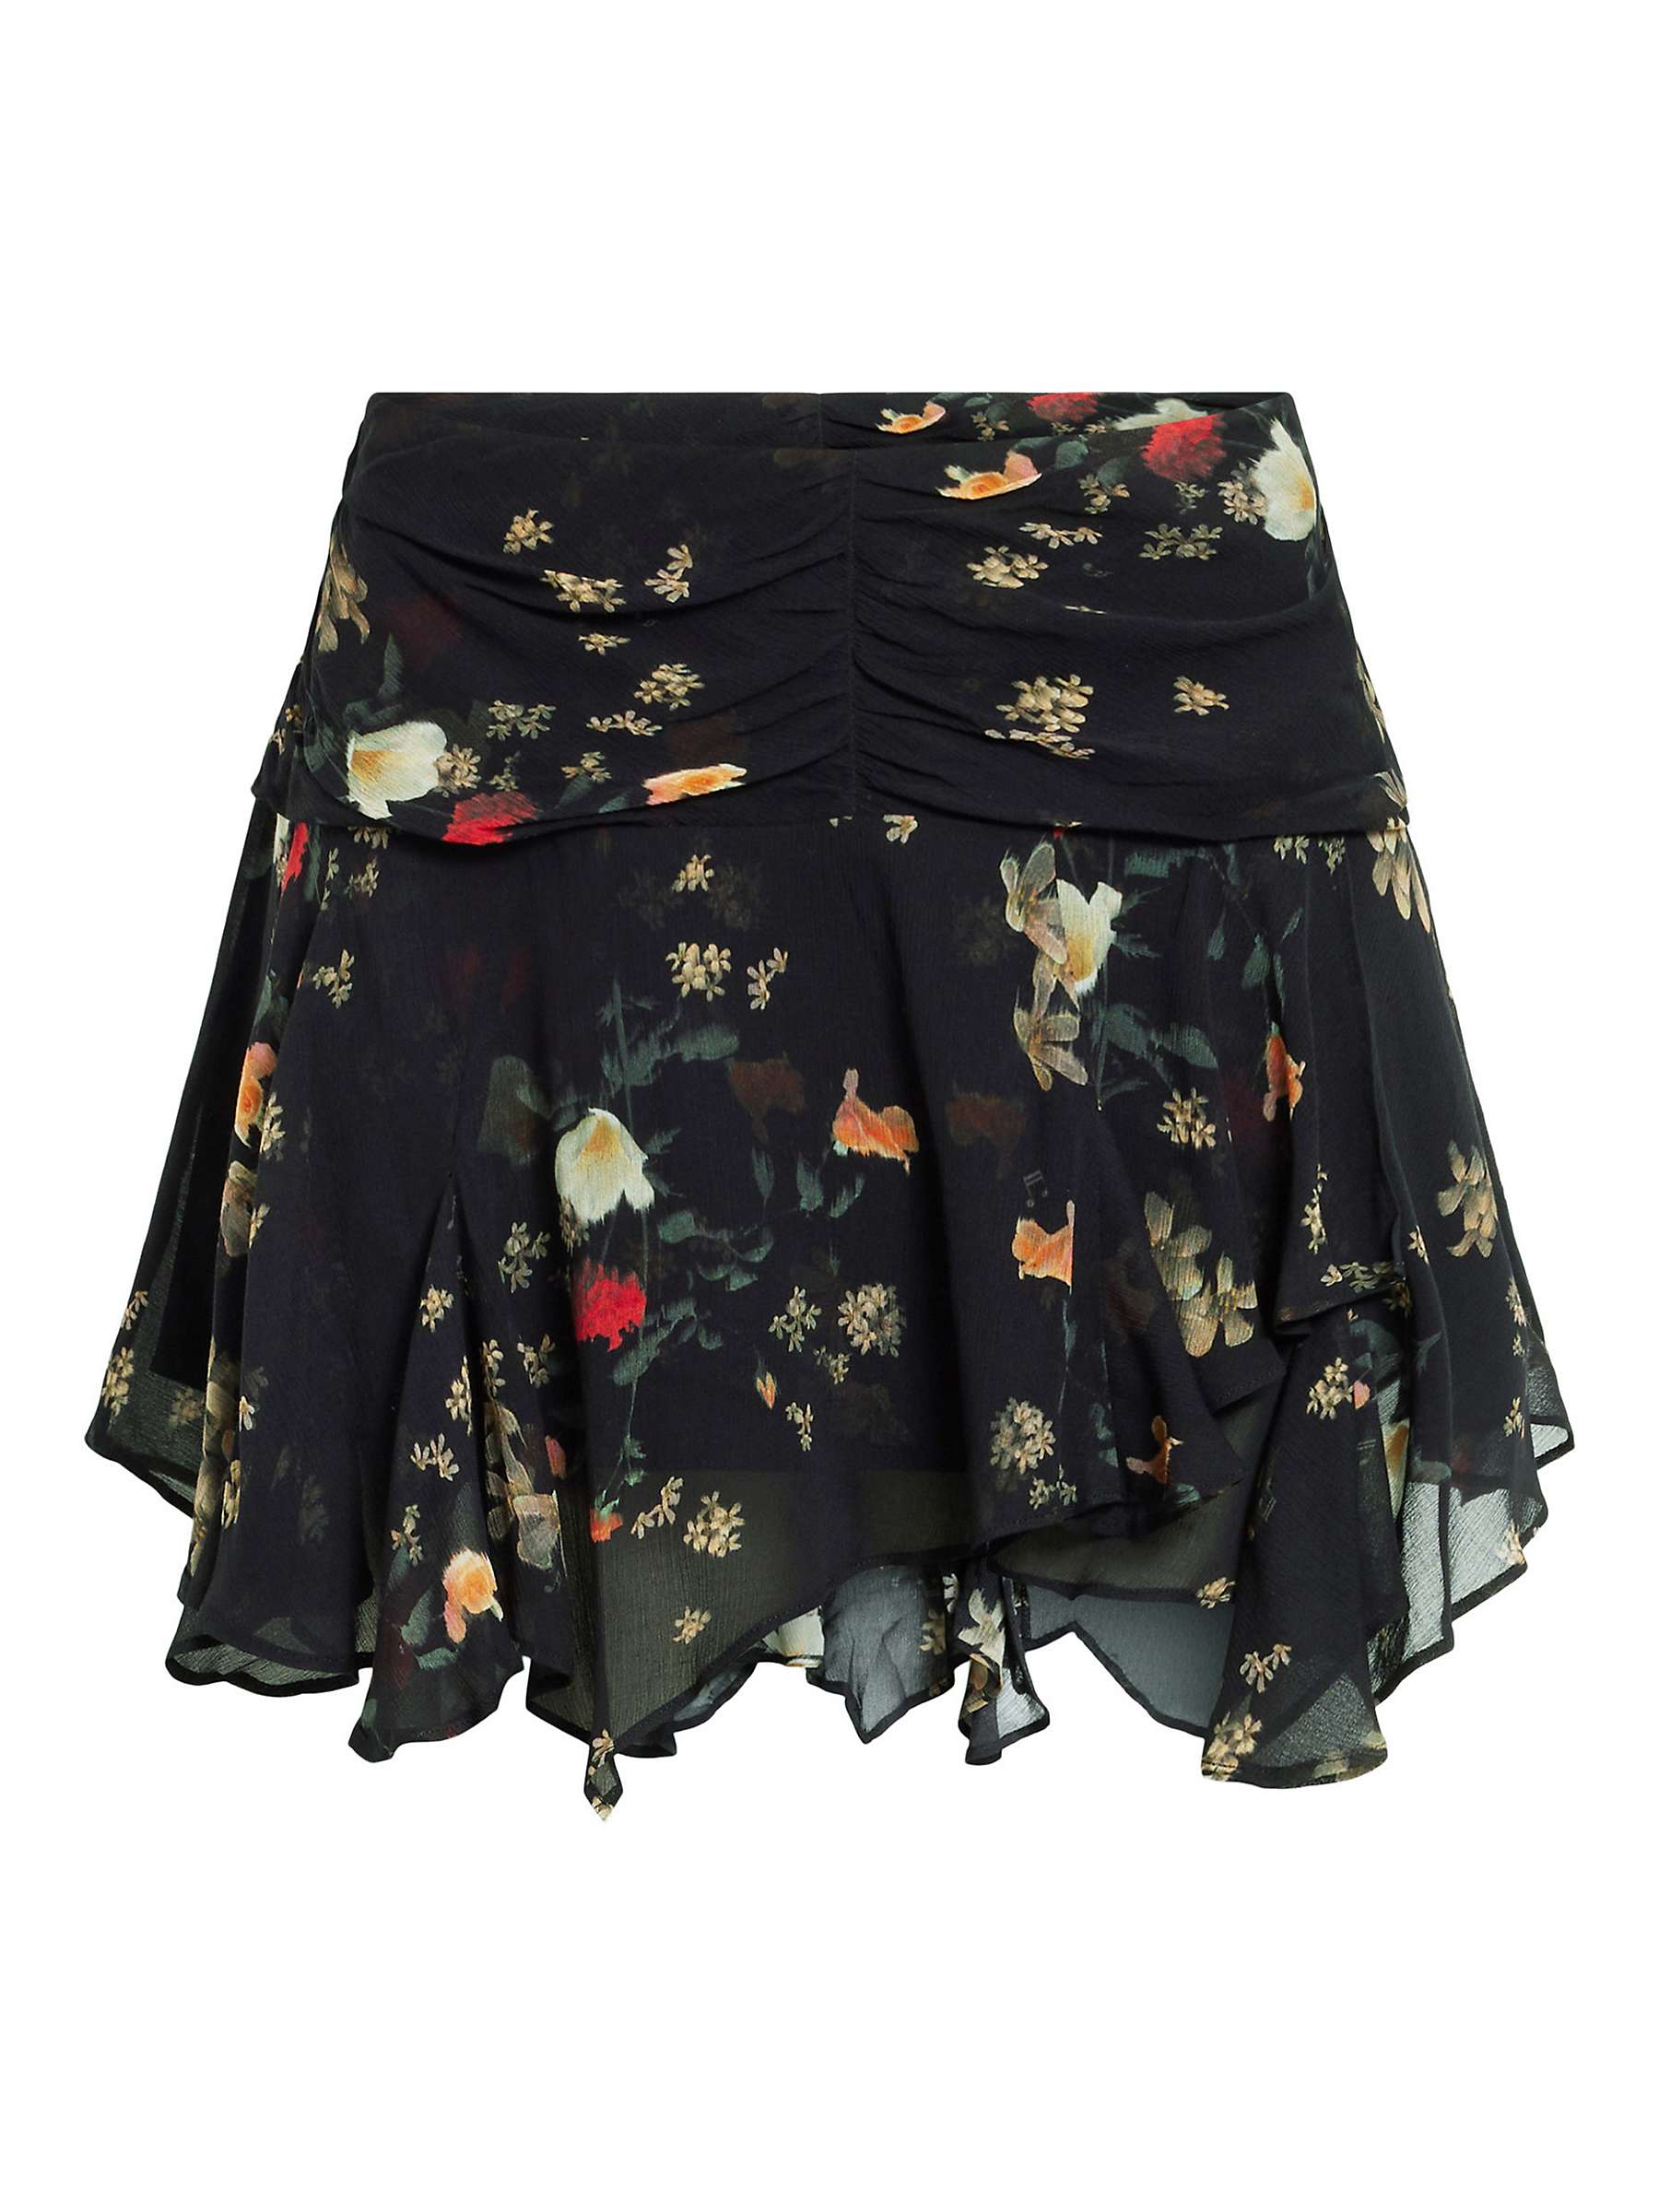 Buy AllSaints Erica Kora Ecovero Skirt, Black/Multi Online at johnlewis.com